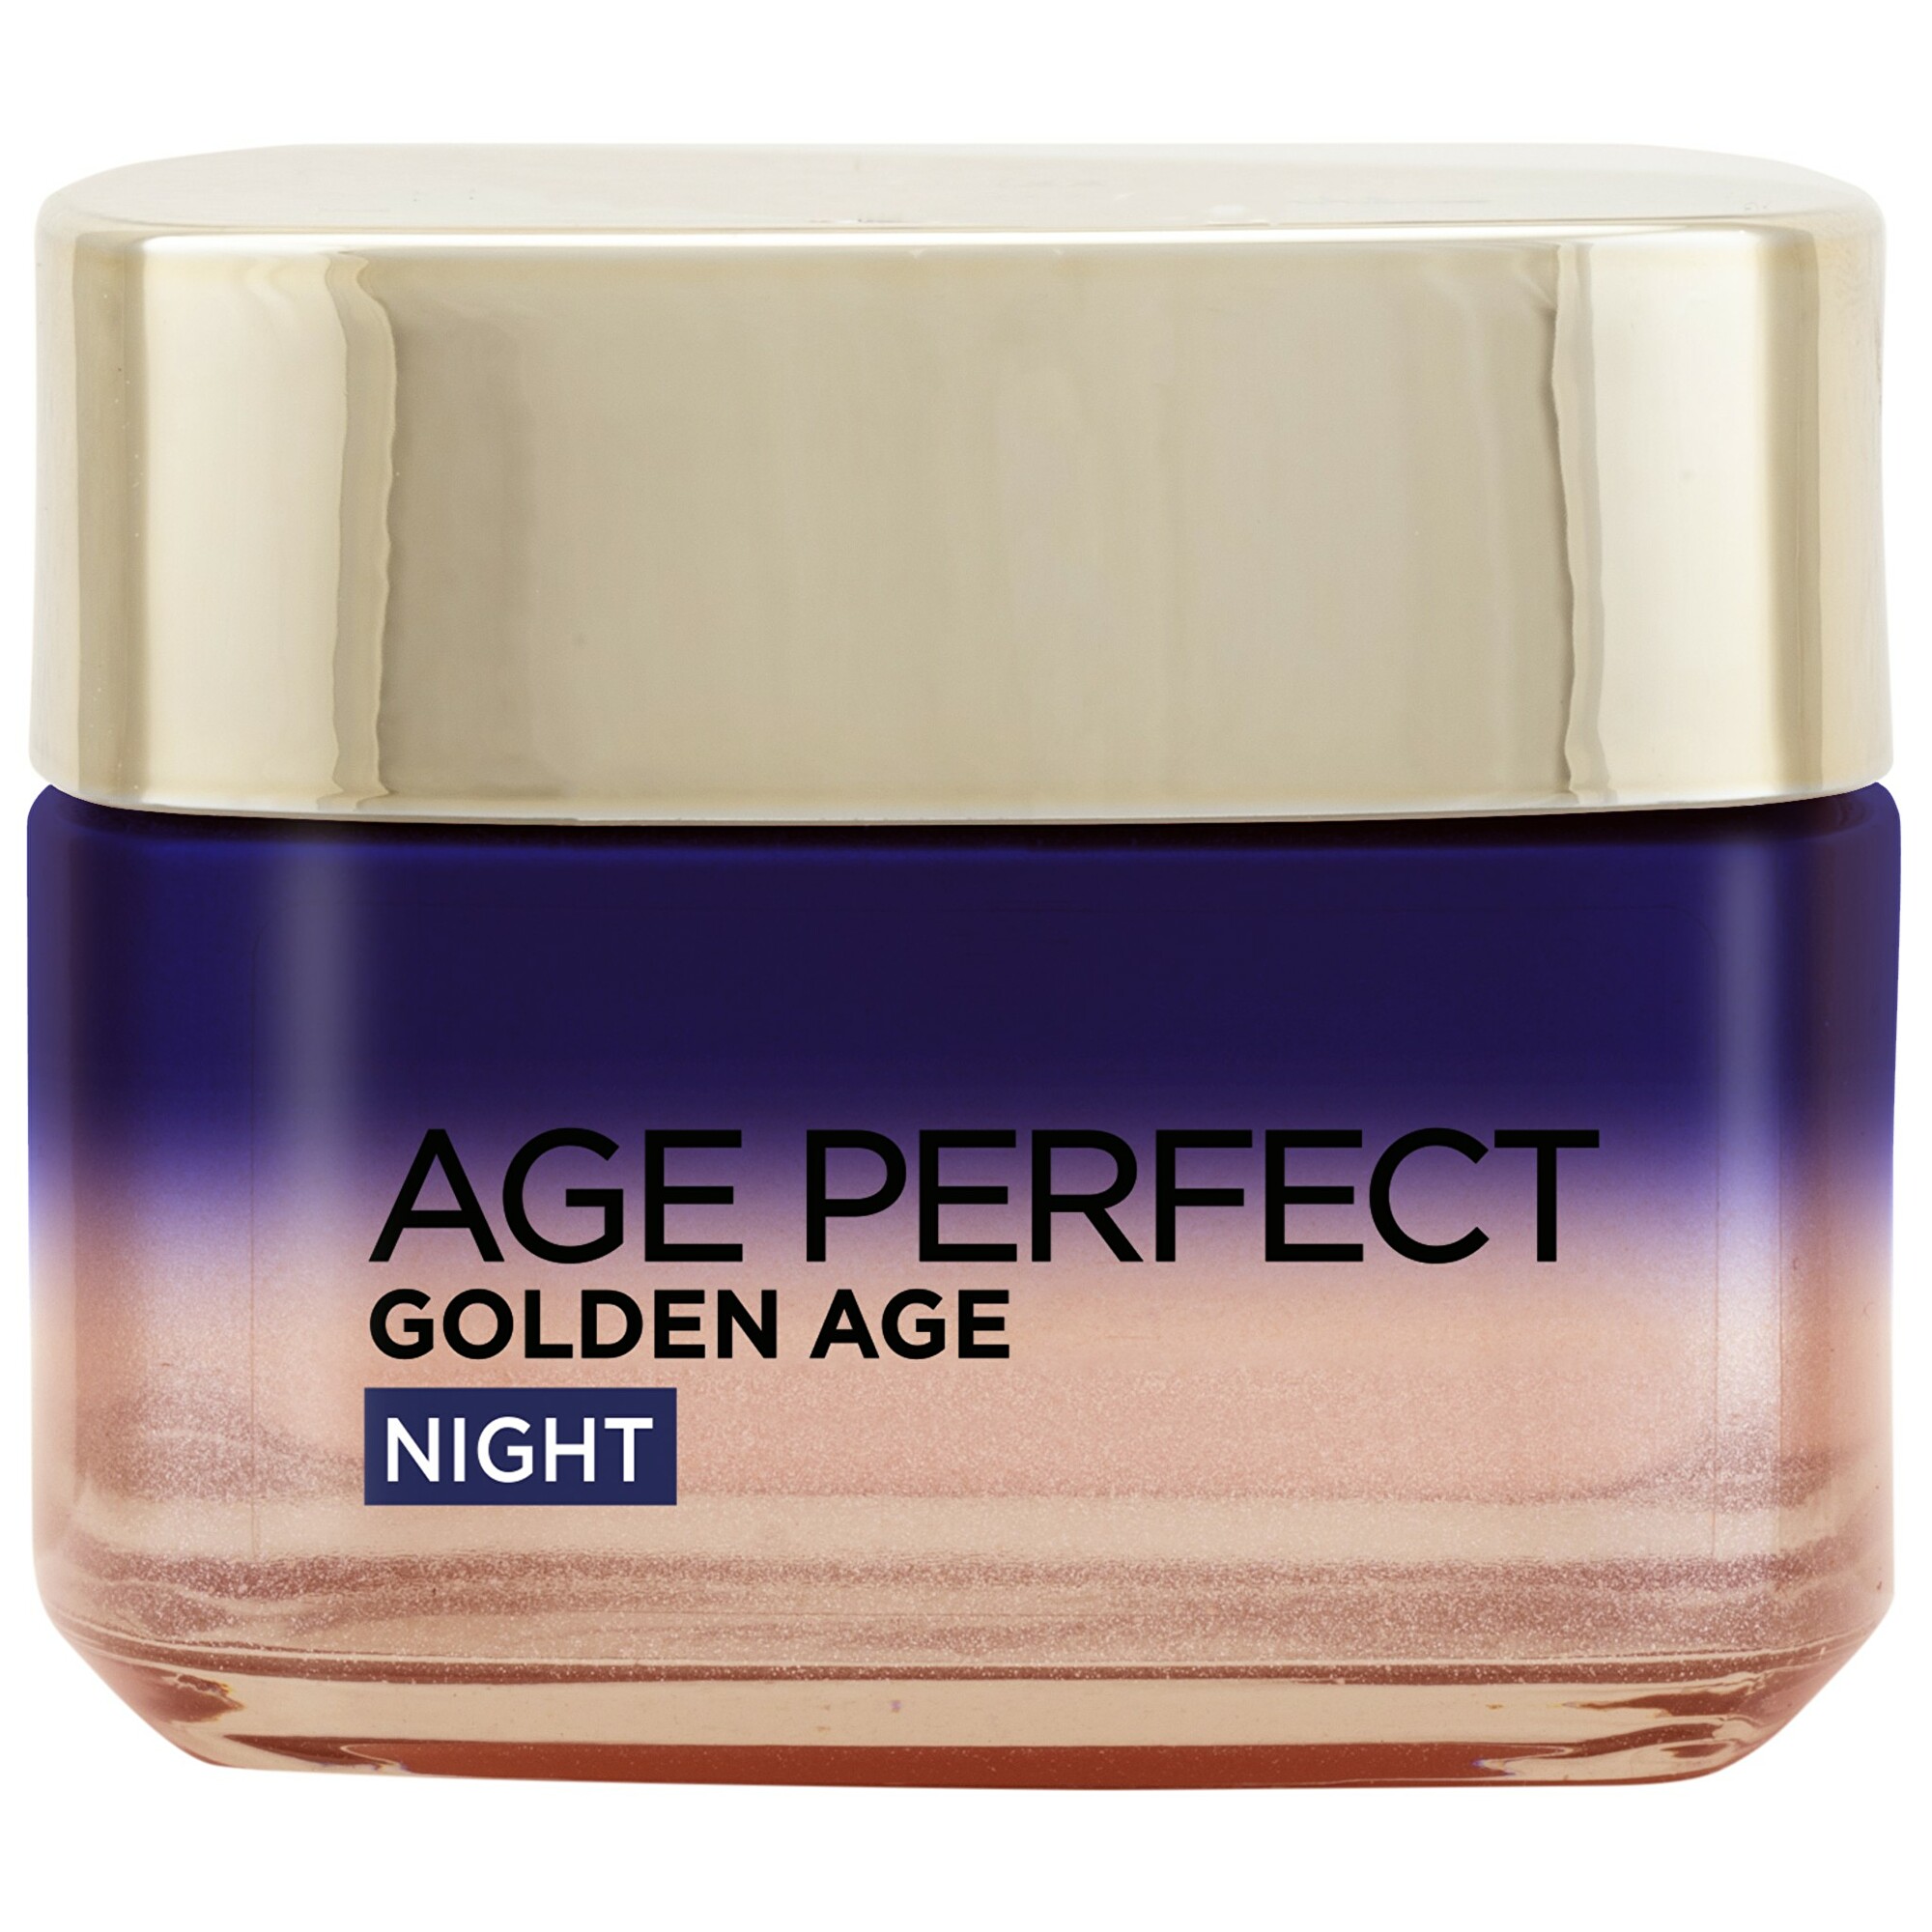 L´Oréal Paris (Reactivating Cooling Night Cream) krém pre zrelú pleť Age Perfect Gold en Age 50 ml